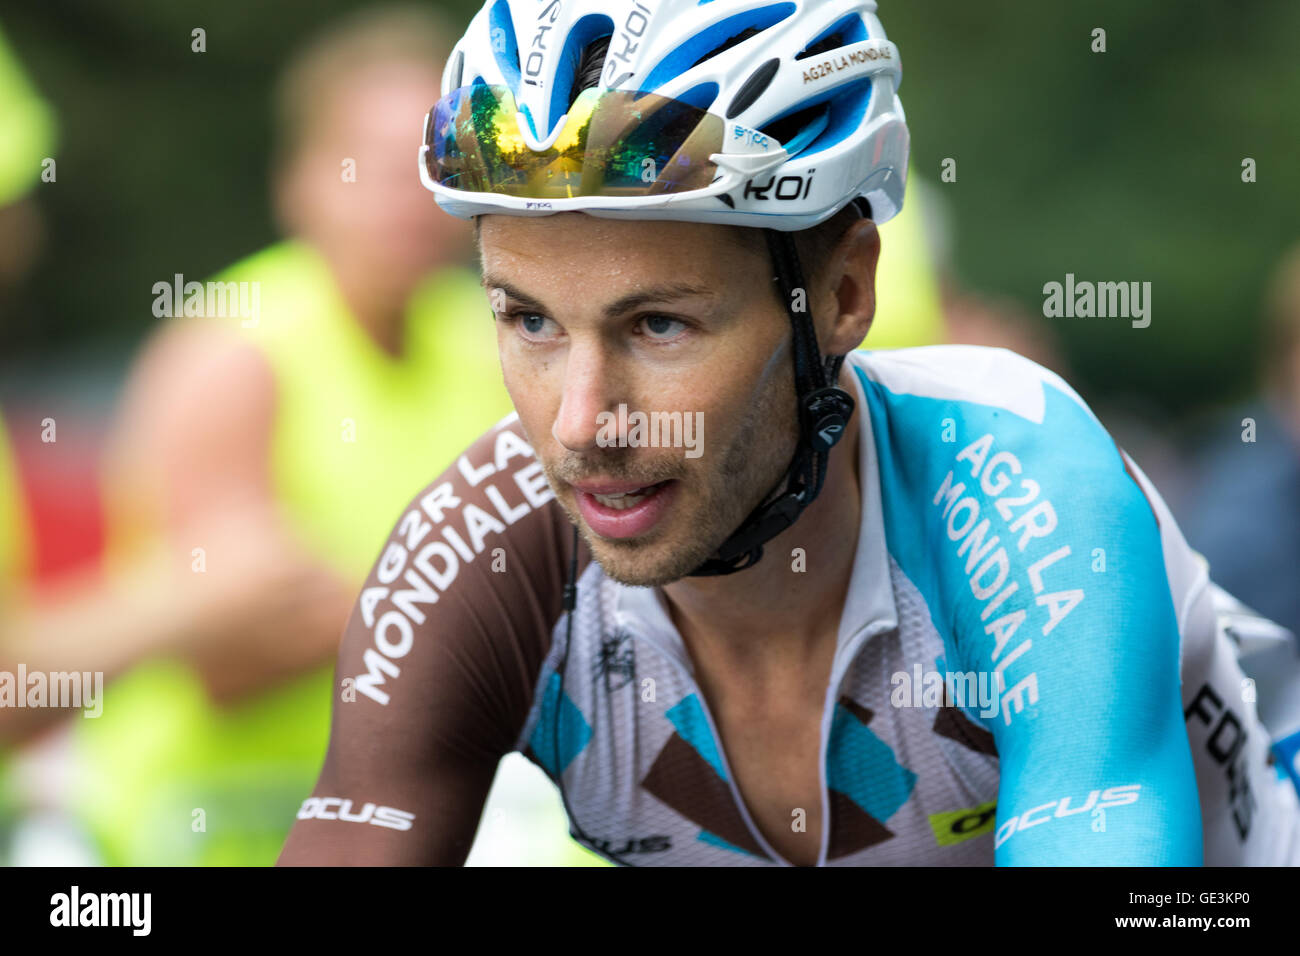 Tour de France. 22nd July, 2016. Saint-Gervais-les-Bains, FR. Michael ...